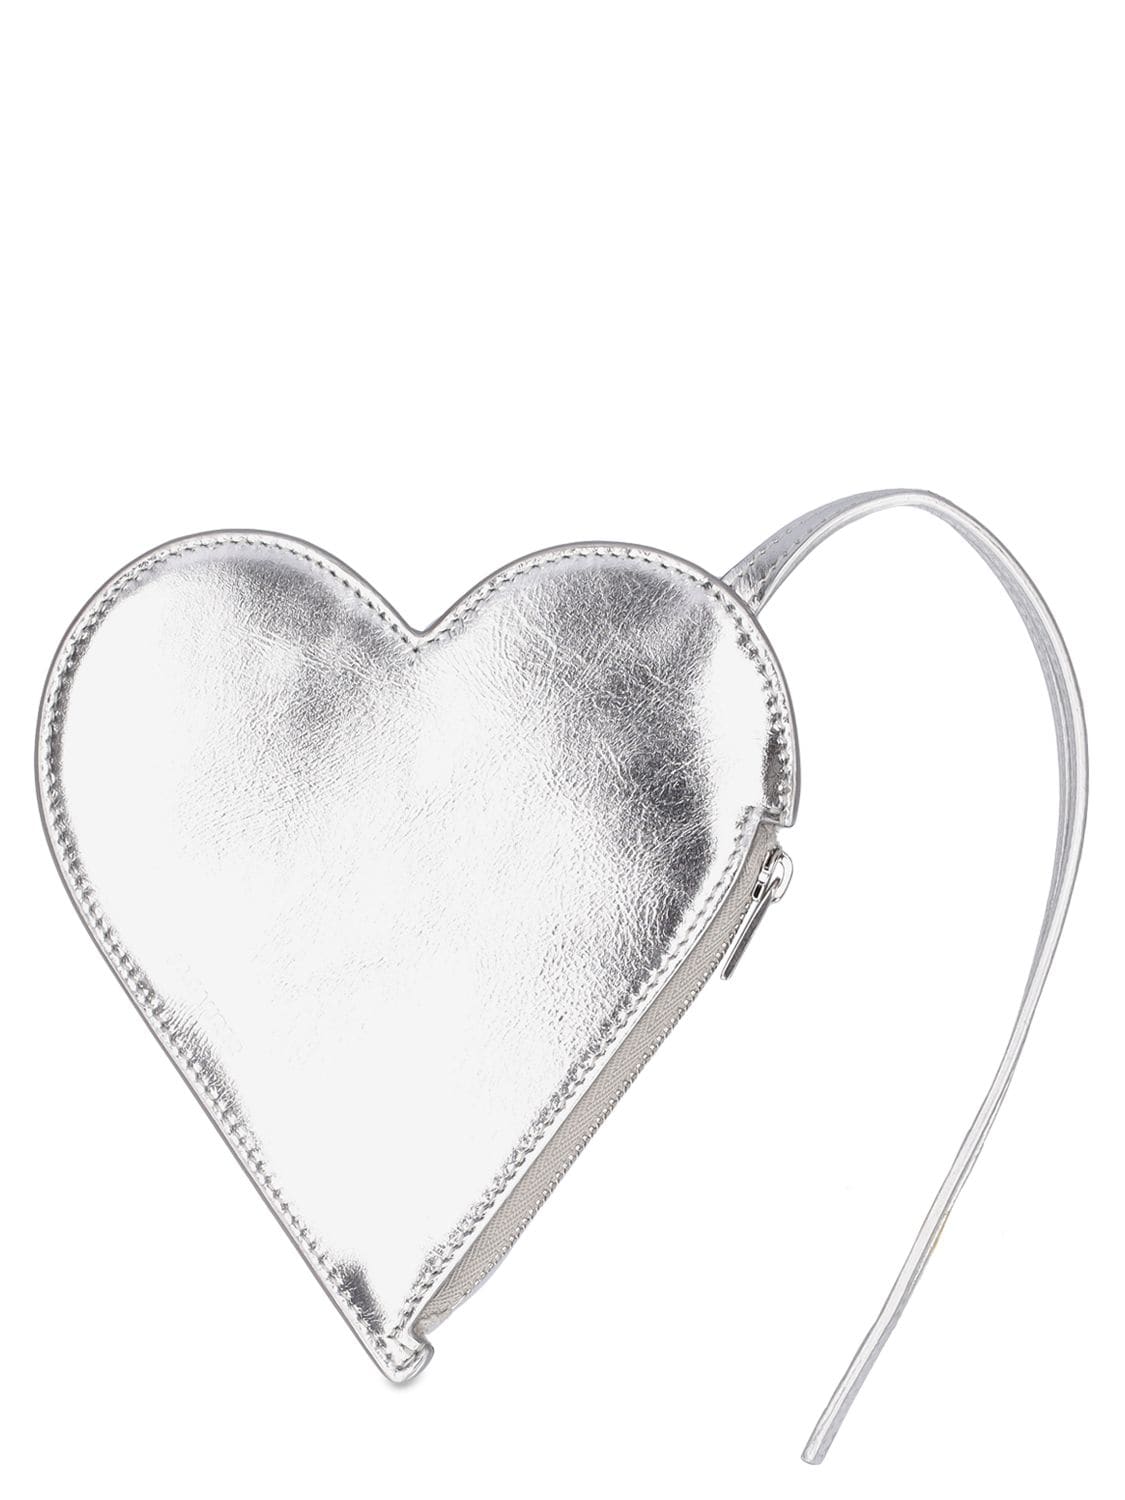 Leather Heart-shaped Pouch - JIL SANDER - Modalova